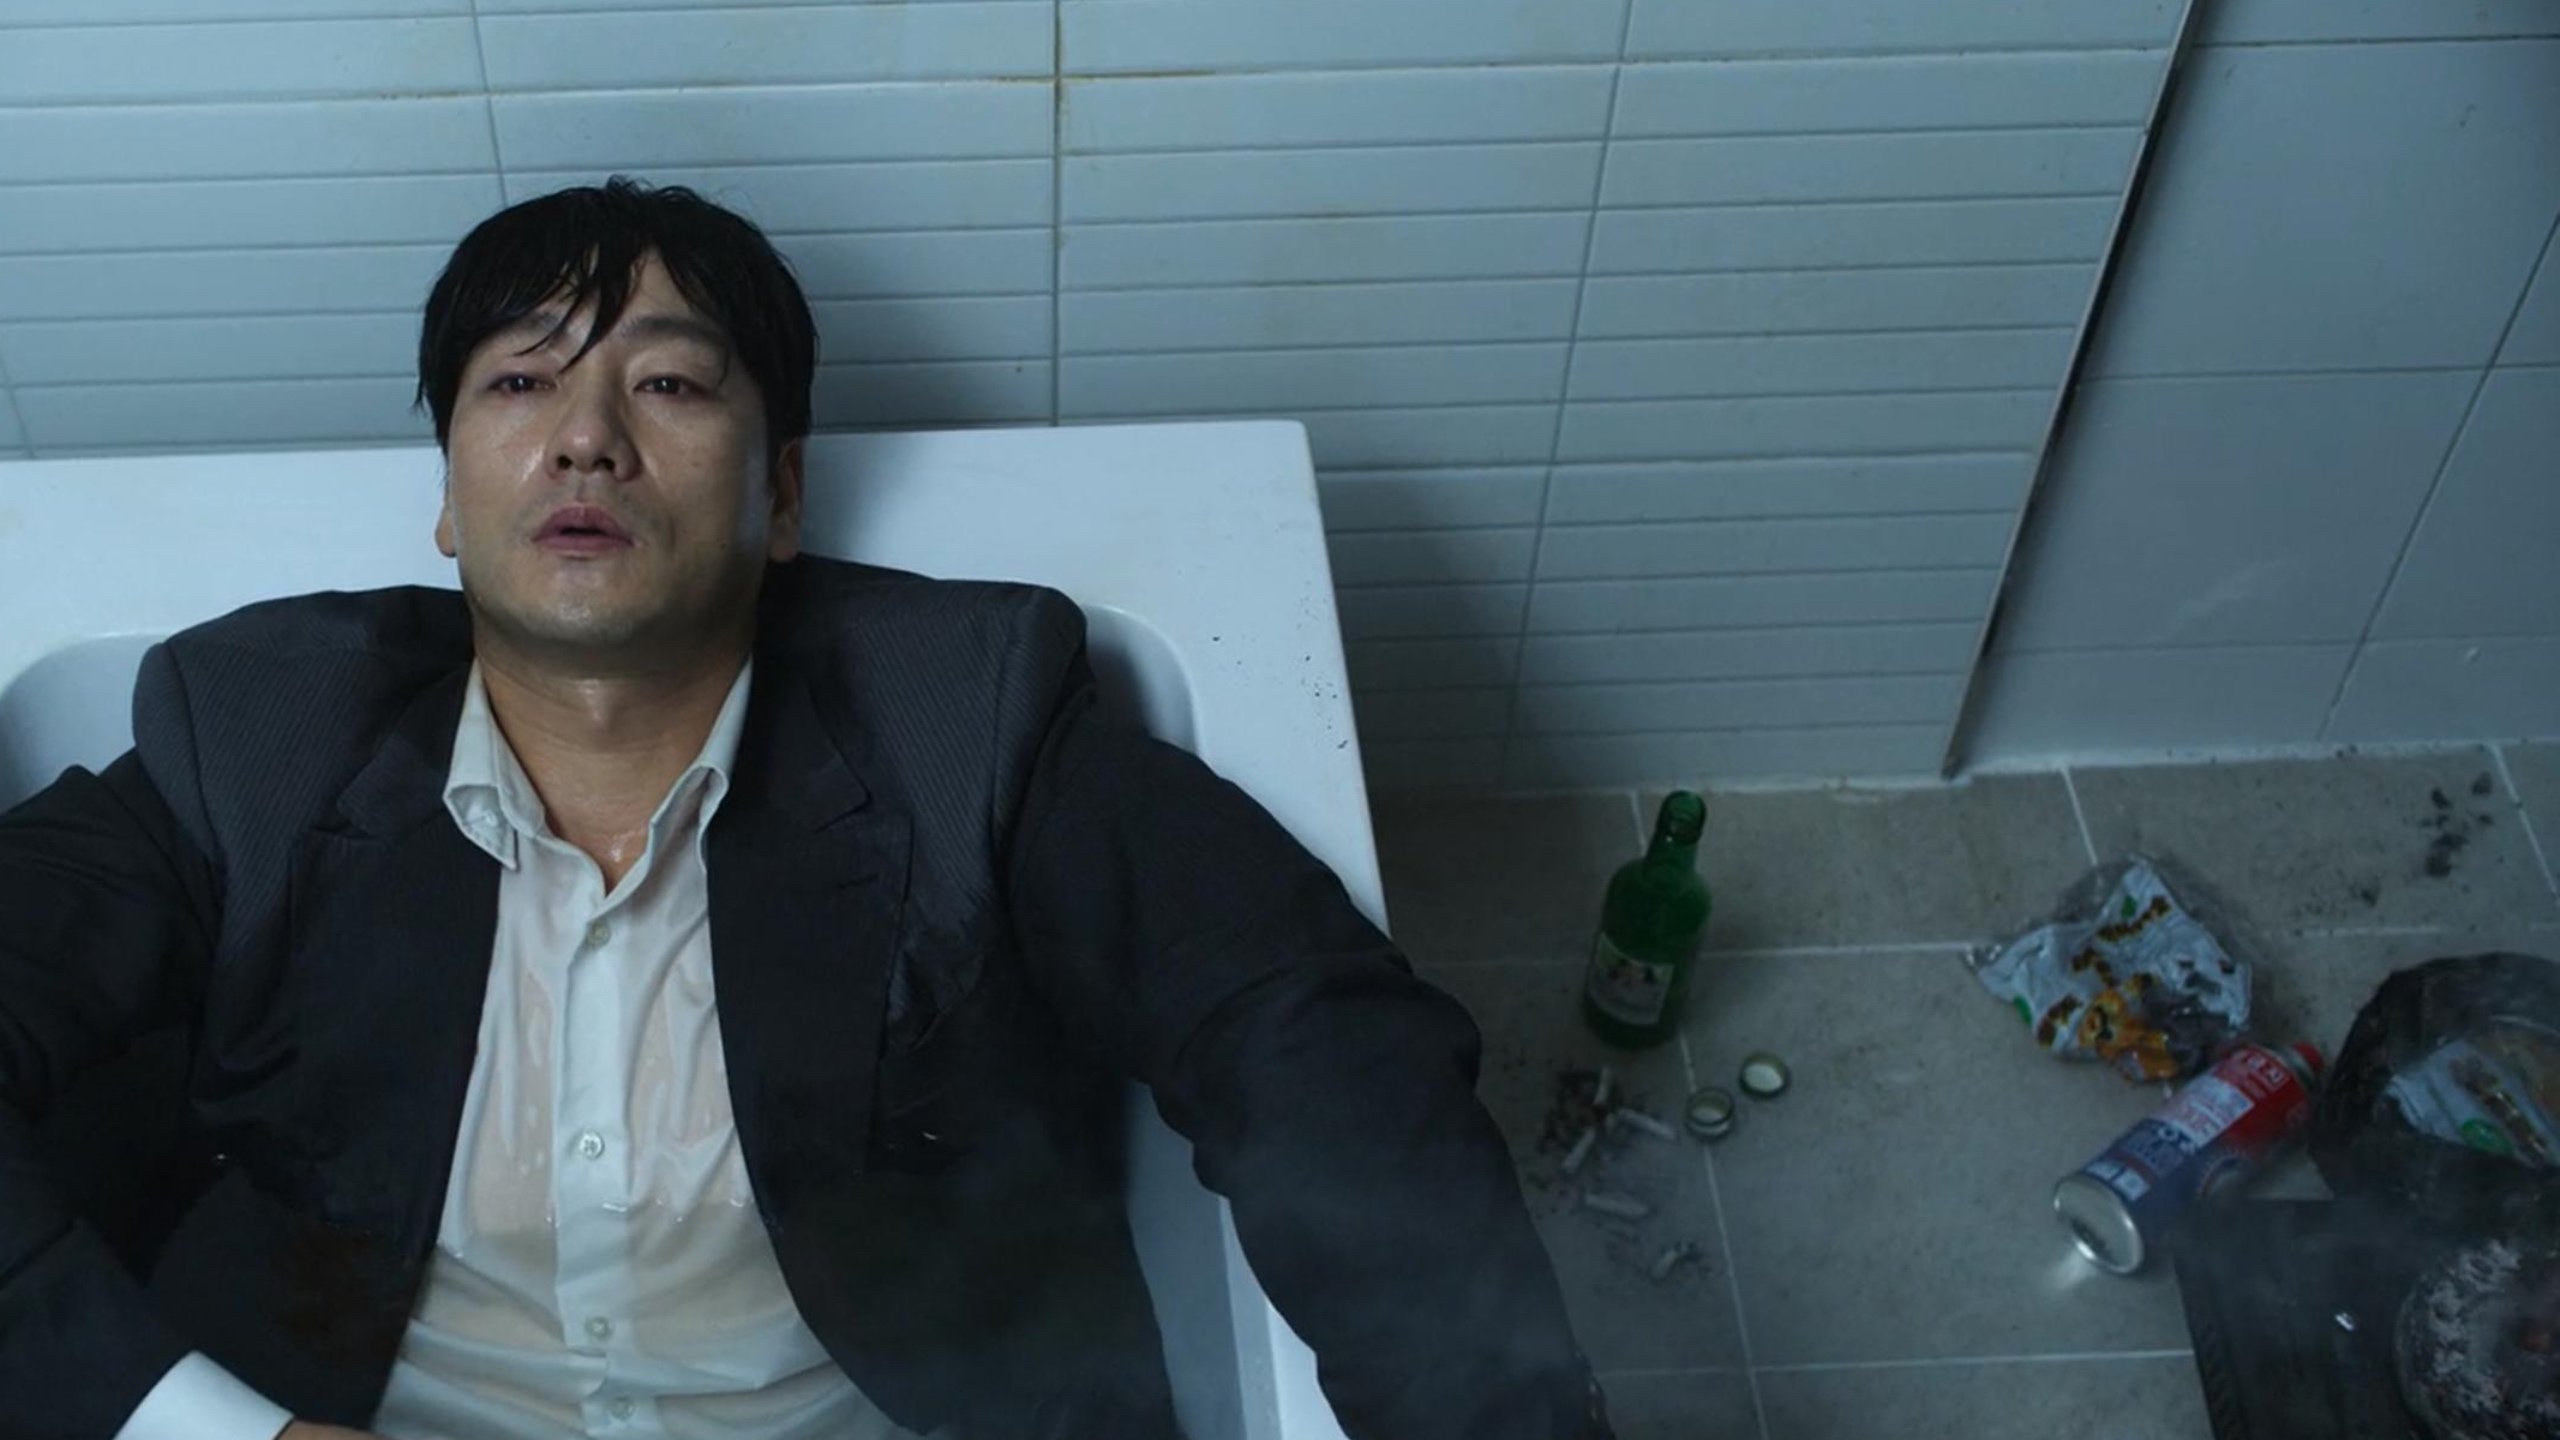 Cho Sang-woo in bathtub scene 'Squid Game' episode 2 wearing grey suit